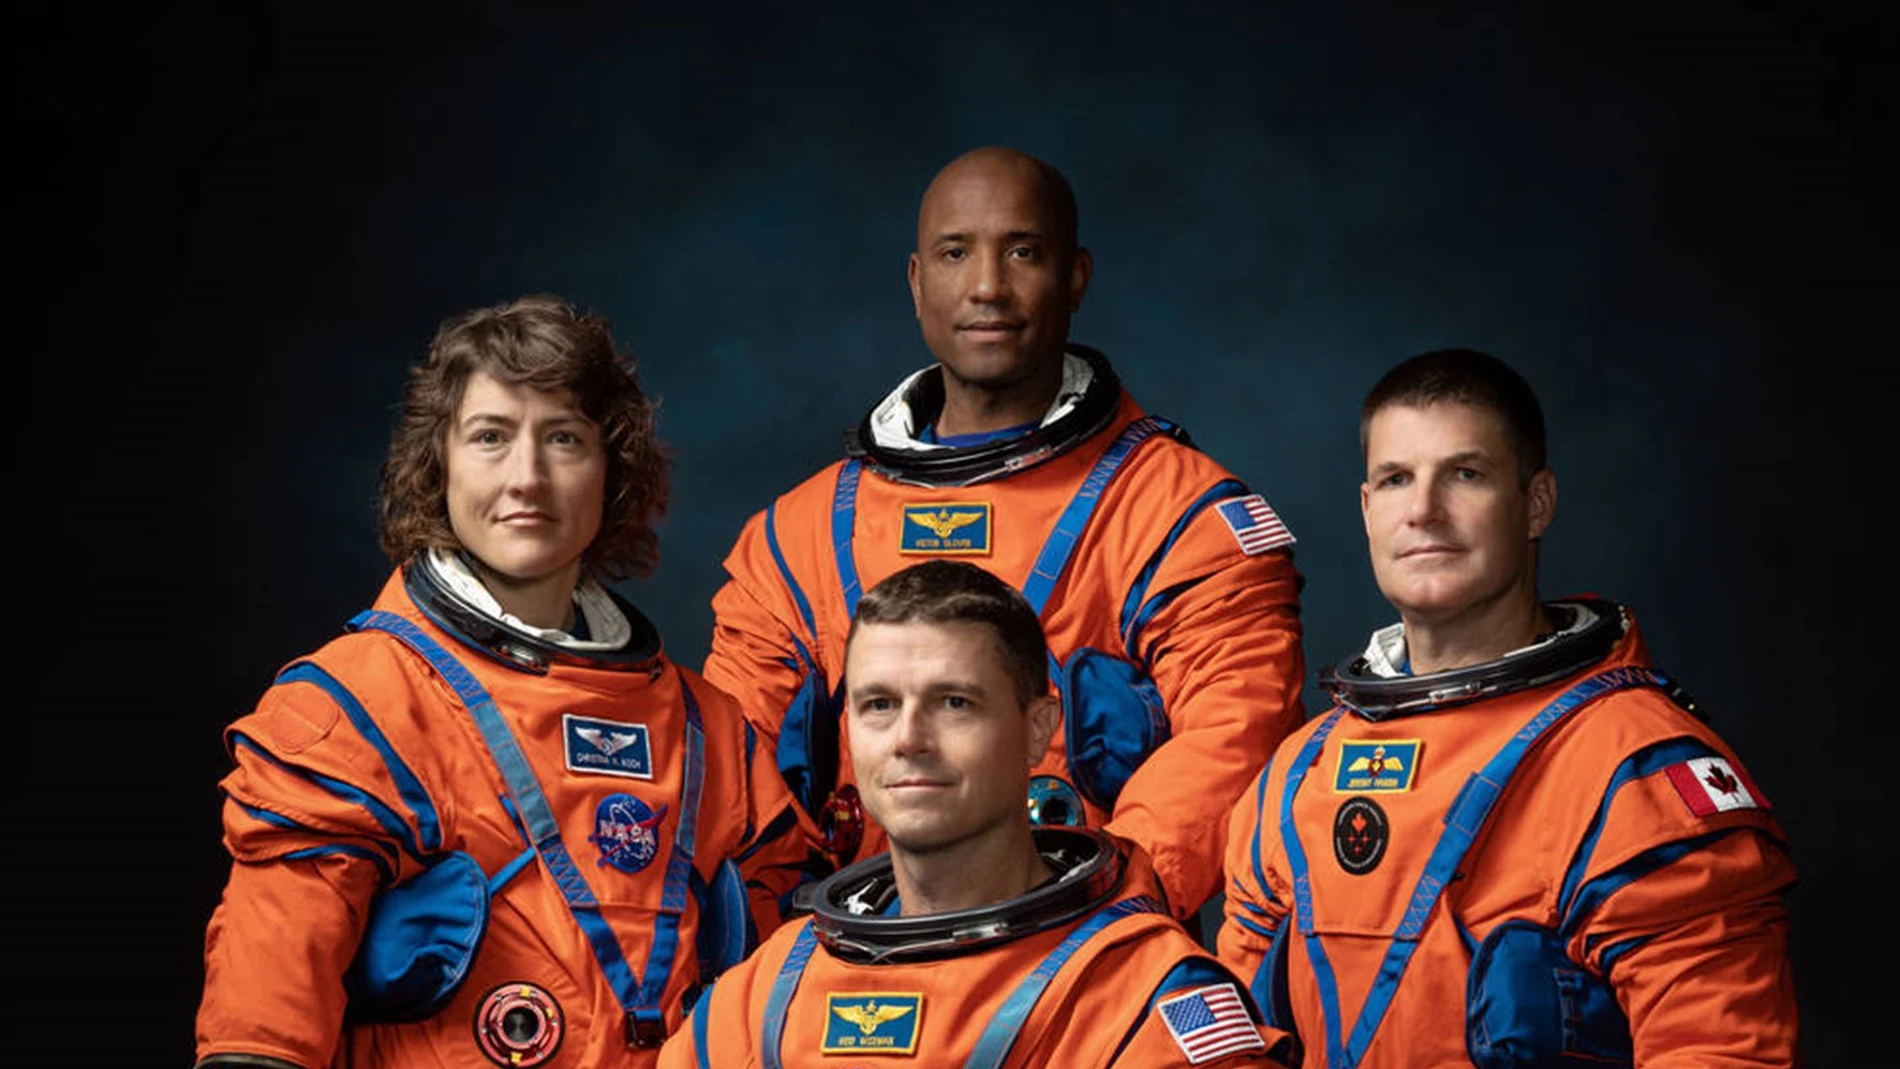 La tripulación de la misión Artemis II de la NASA (de izquierda a derecha): Los astronautas de la NASA Christina Hammock Koch, Reid Wiseman (sentado), Victor Glover y el astronauta de la Agencia Espacial Canadiense Jeremy Hansen.